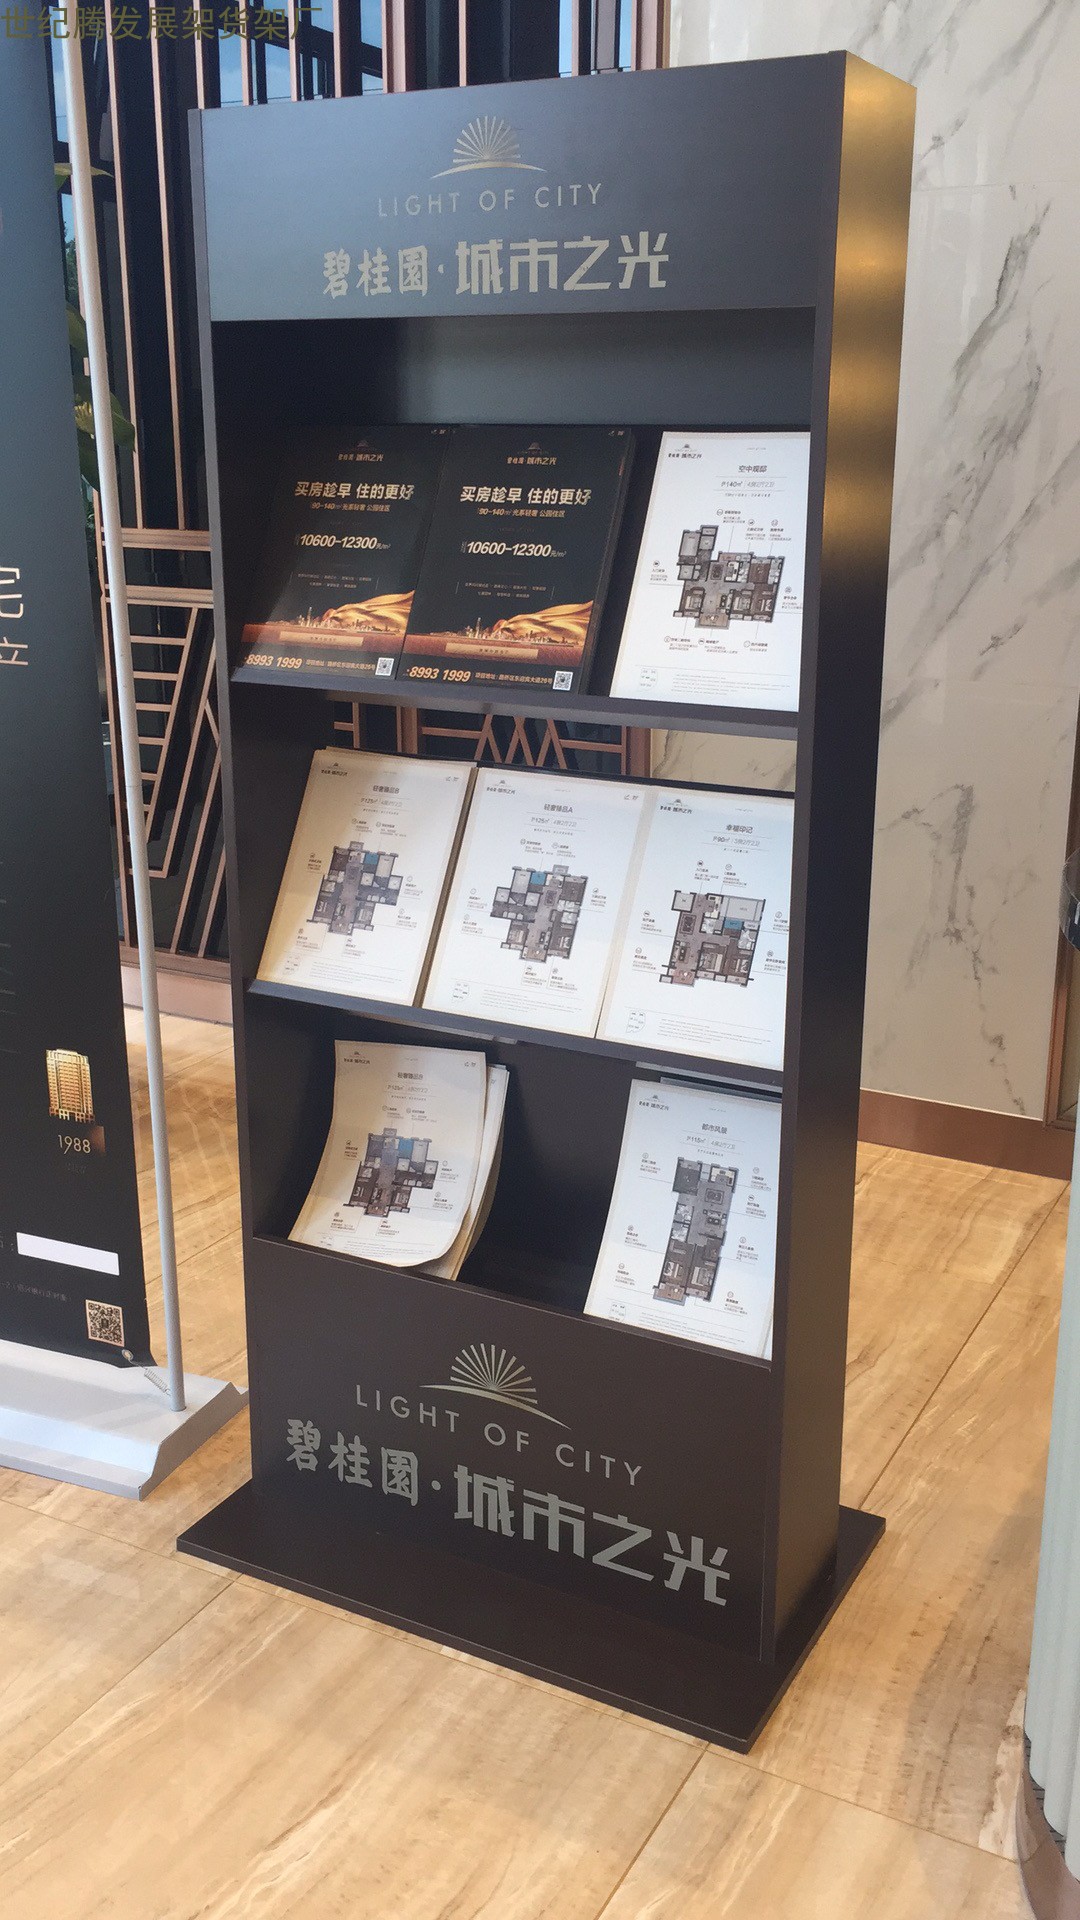 北京户型图展示架  银行邮局宣传册架 旅游传媒广告公司杂志架 酒店大厅木质资料架